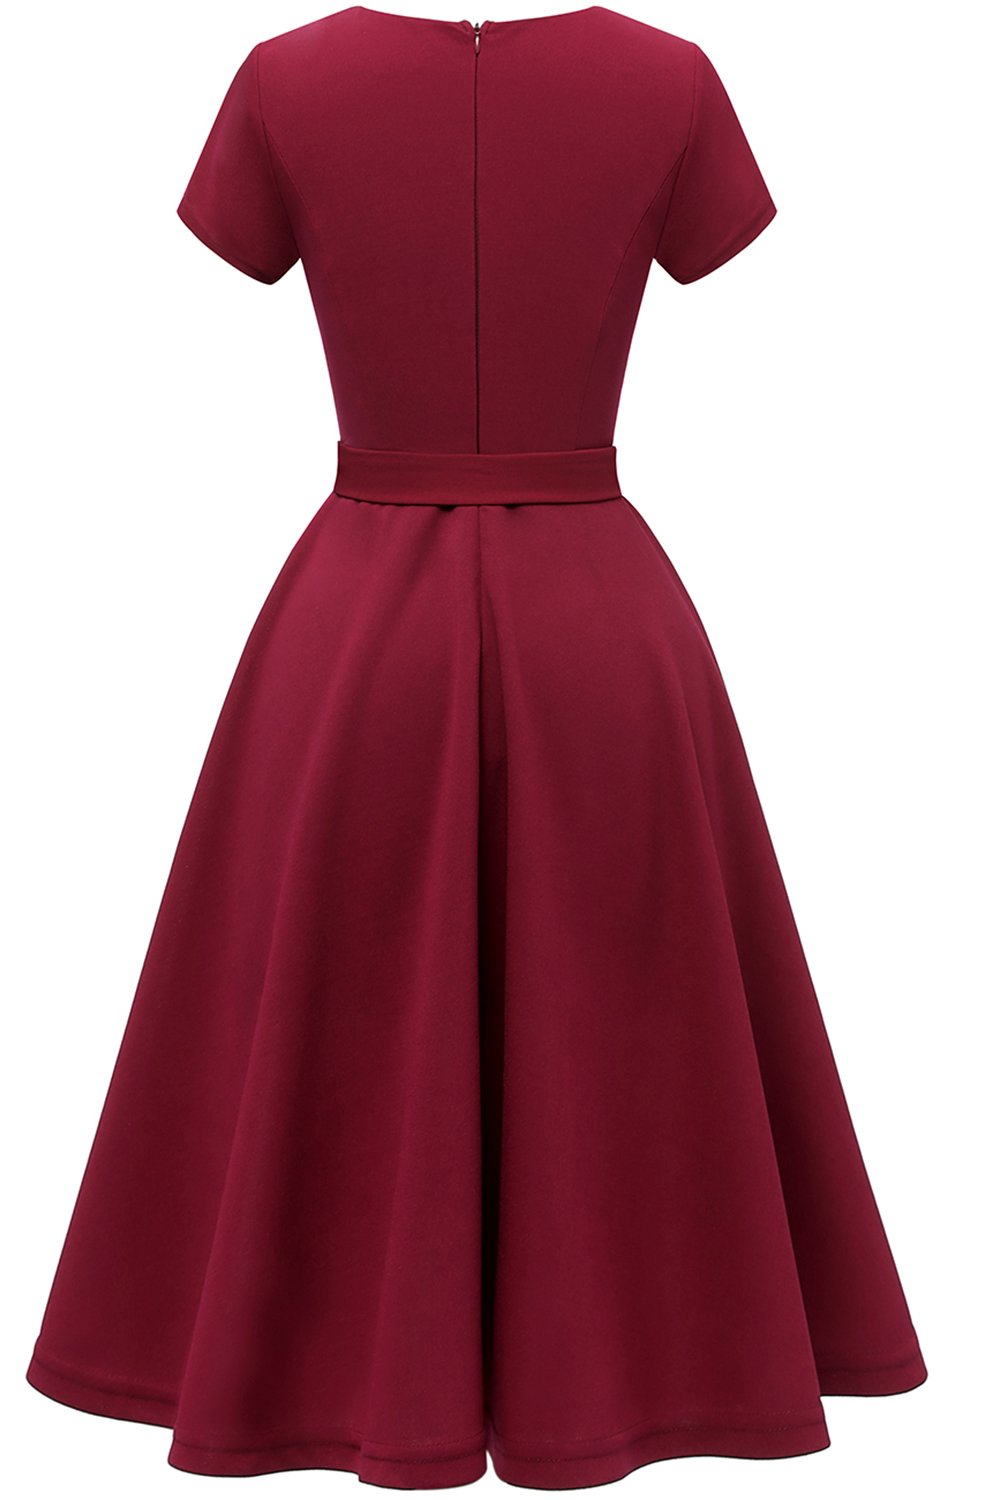 Burgundy Solid Short Sleeves Vintage Swing Dress